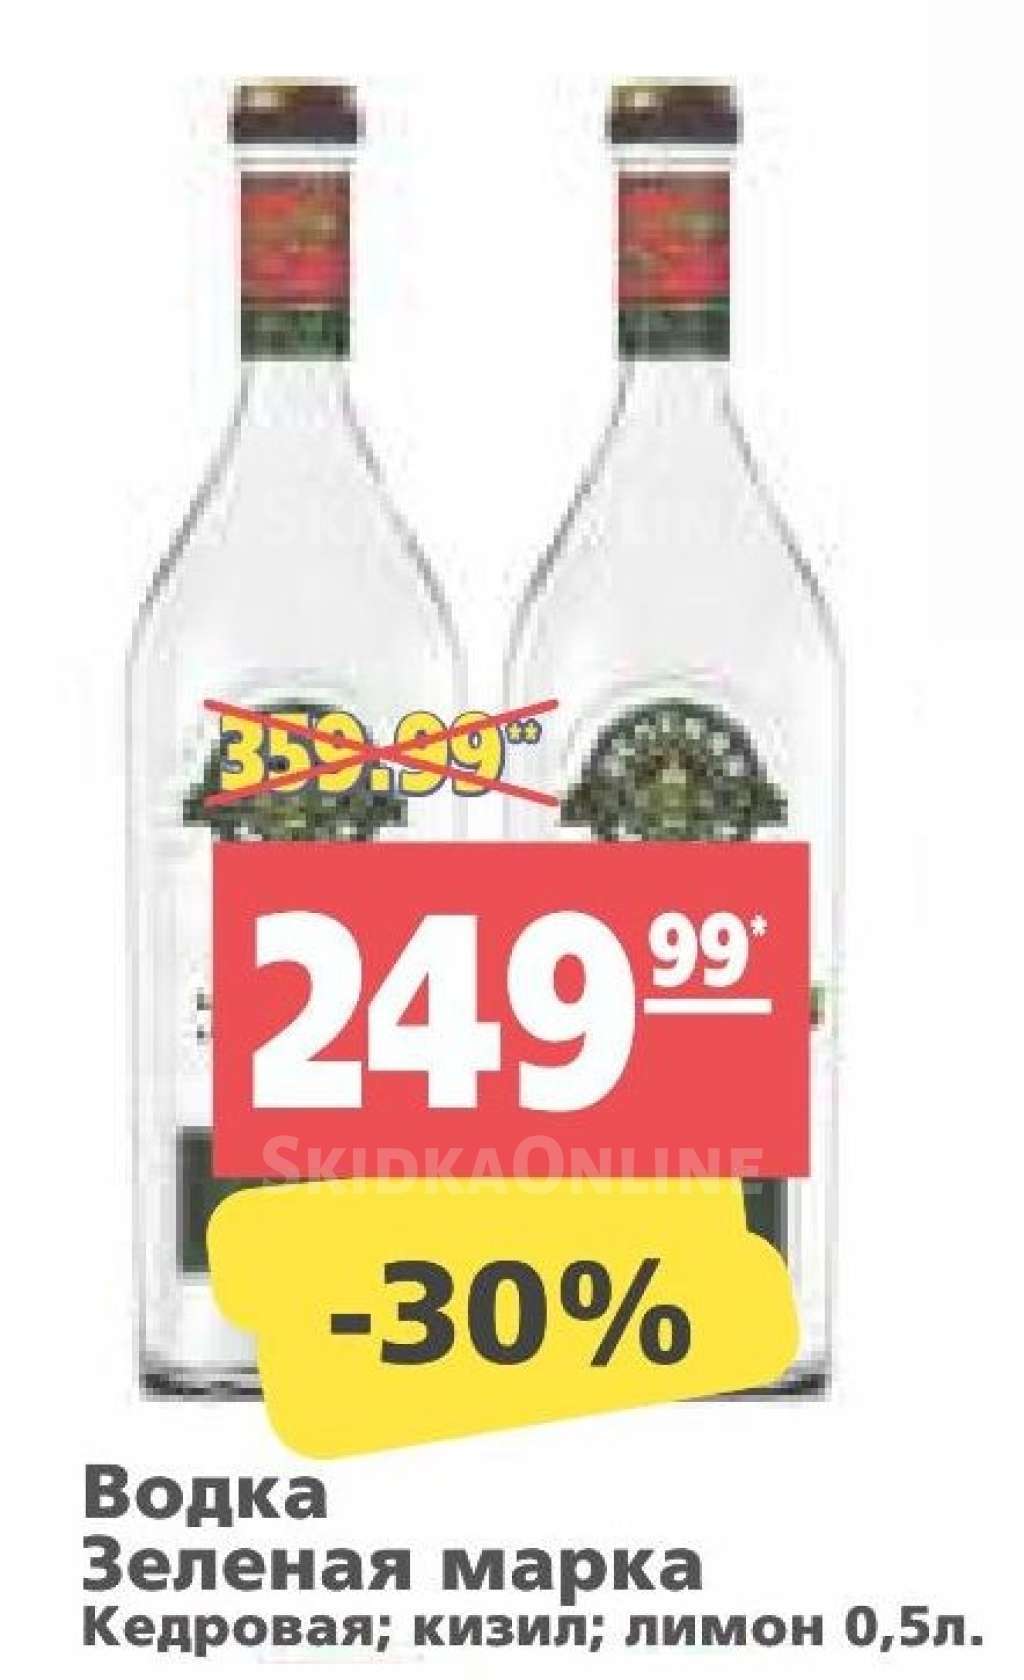 Со скольки и до скольки в 2020 году продают алкоголь в москве